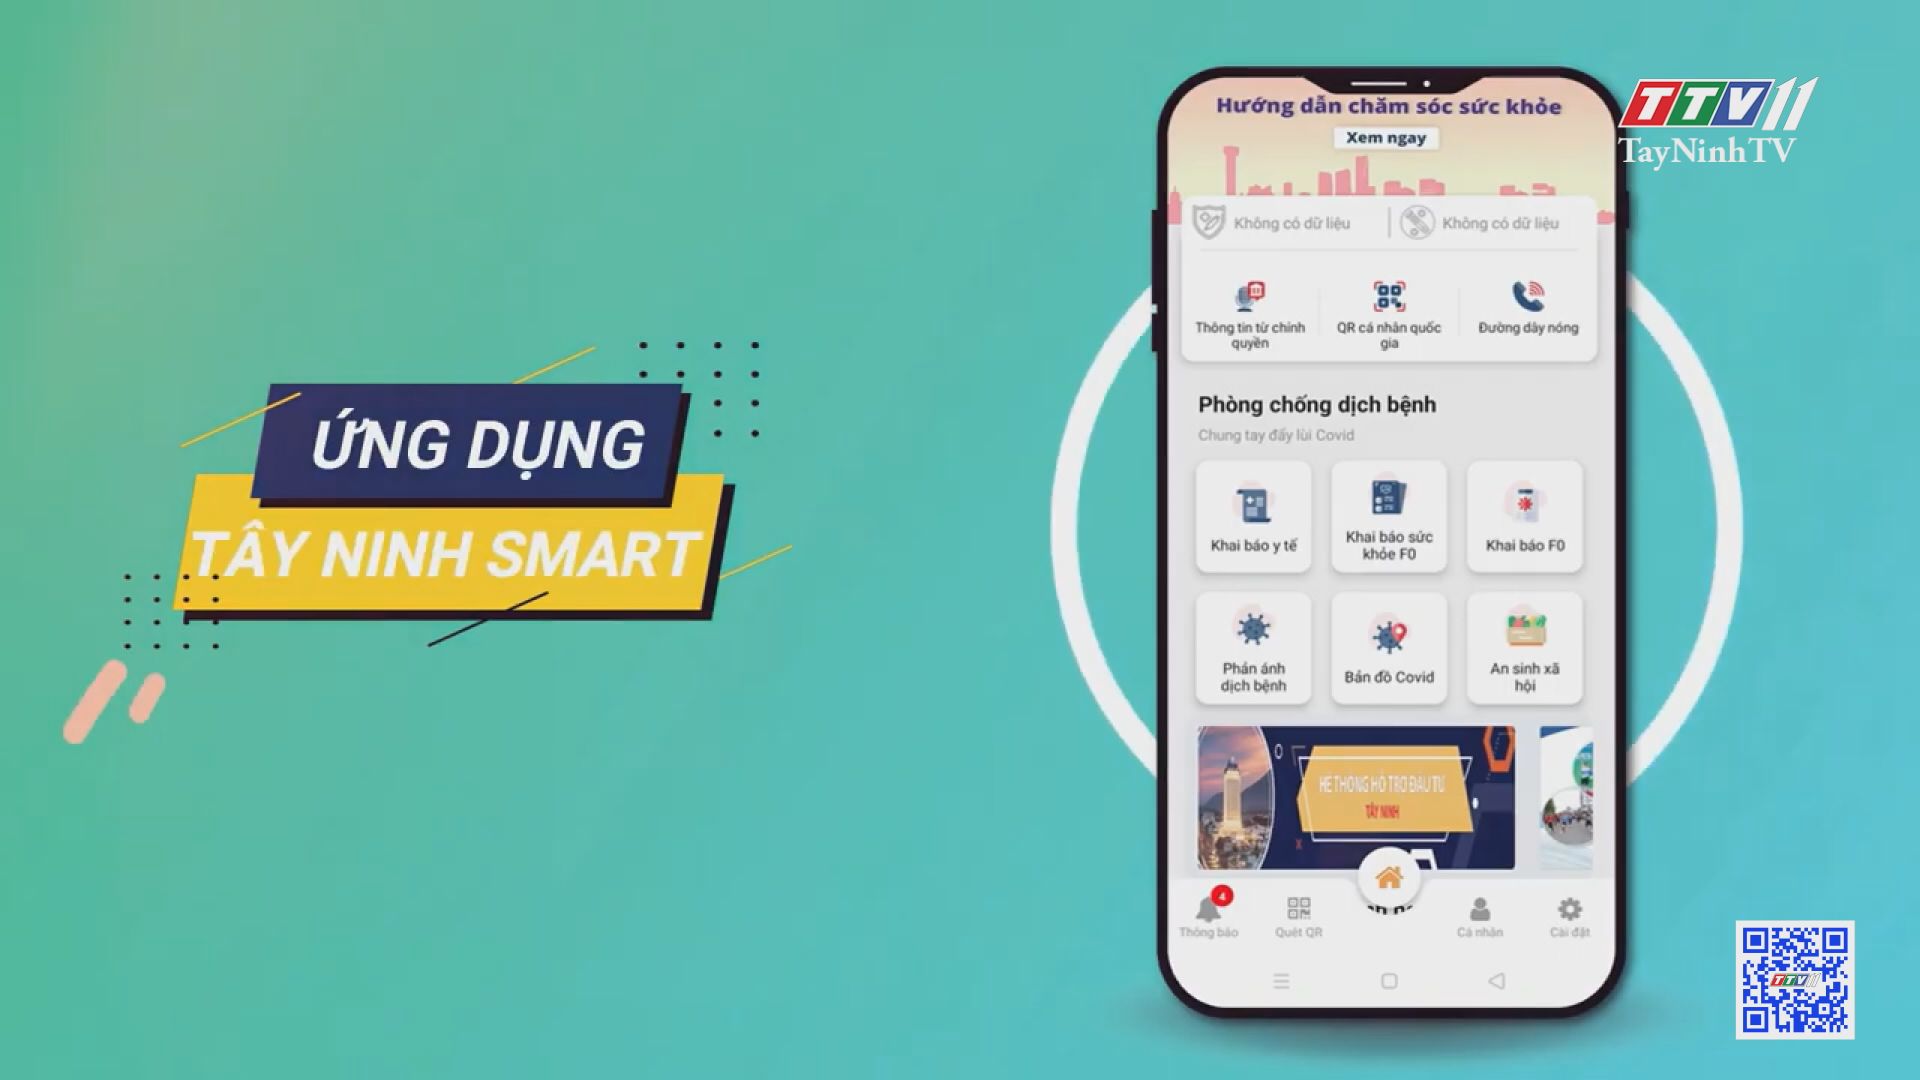 Ứng dụng Tây Ninh Smart mang tiện ích cho mọi người | Chuyển đổi số | TayNinhTV